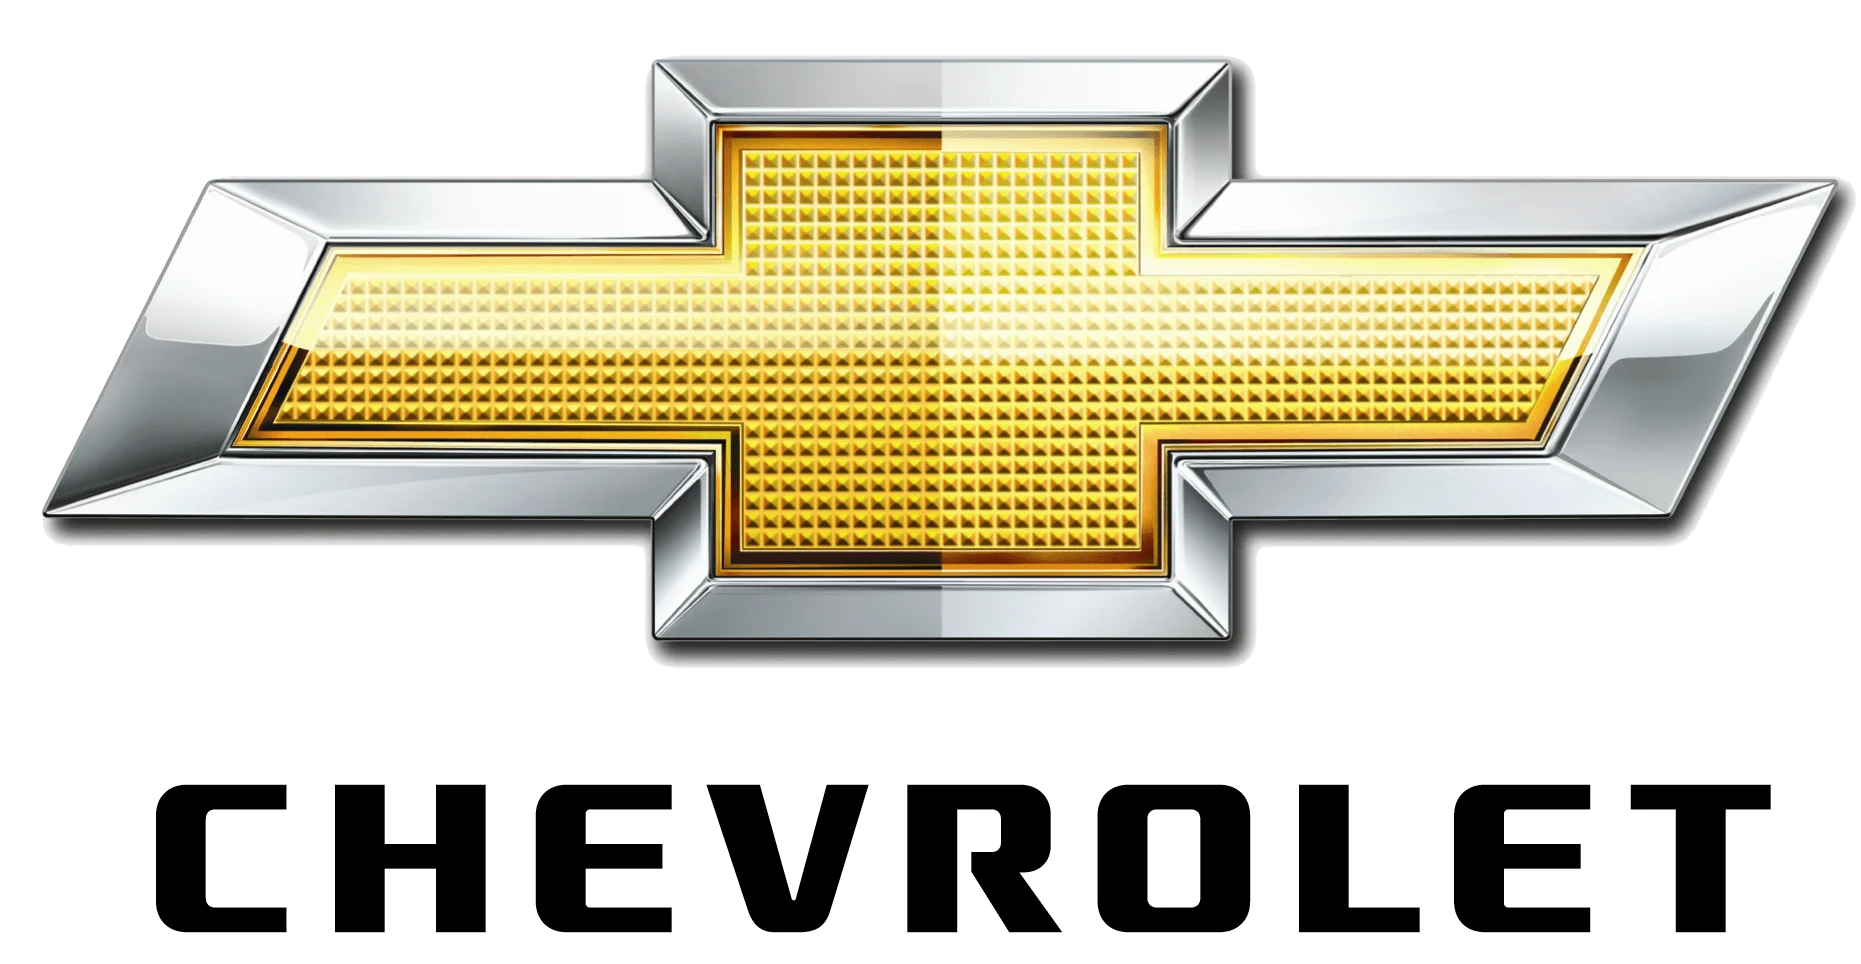 Chevrolet Truck Repair